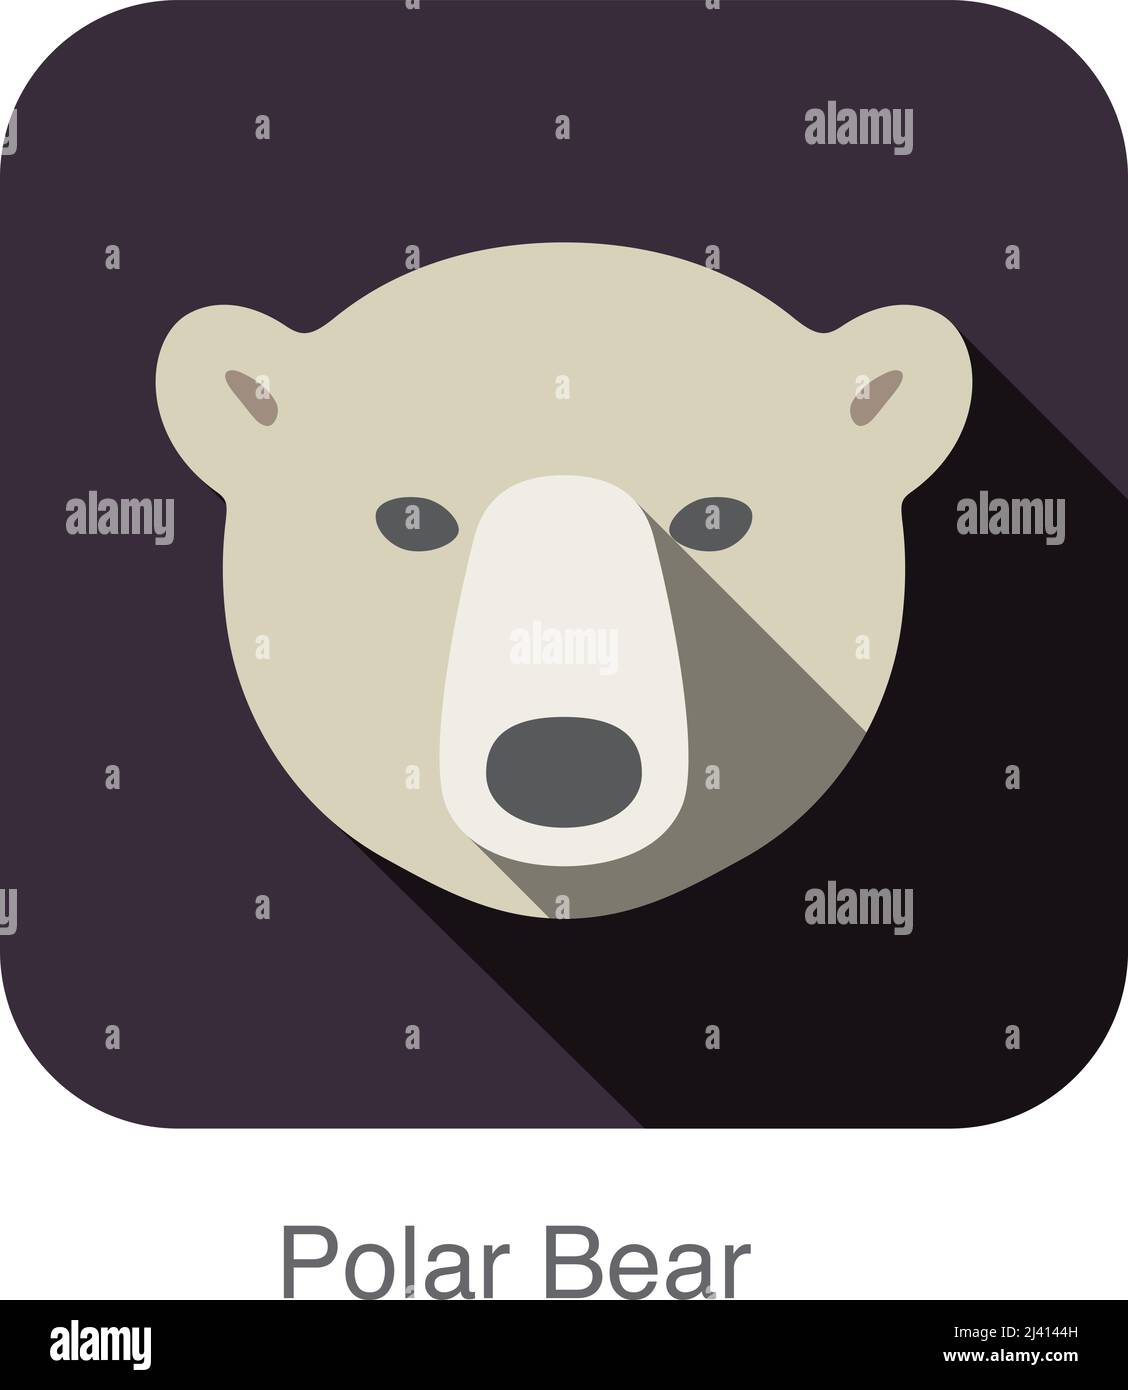 Polar bear face flat icon design. Animal icons series. Stock Vector